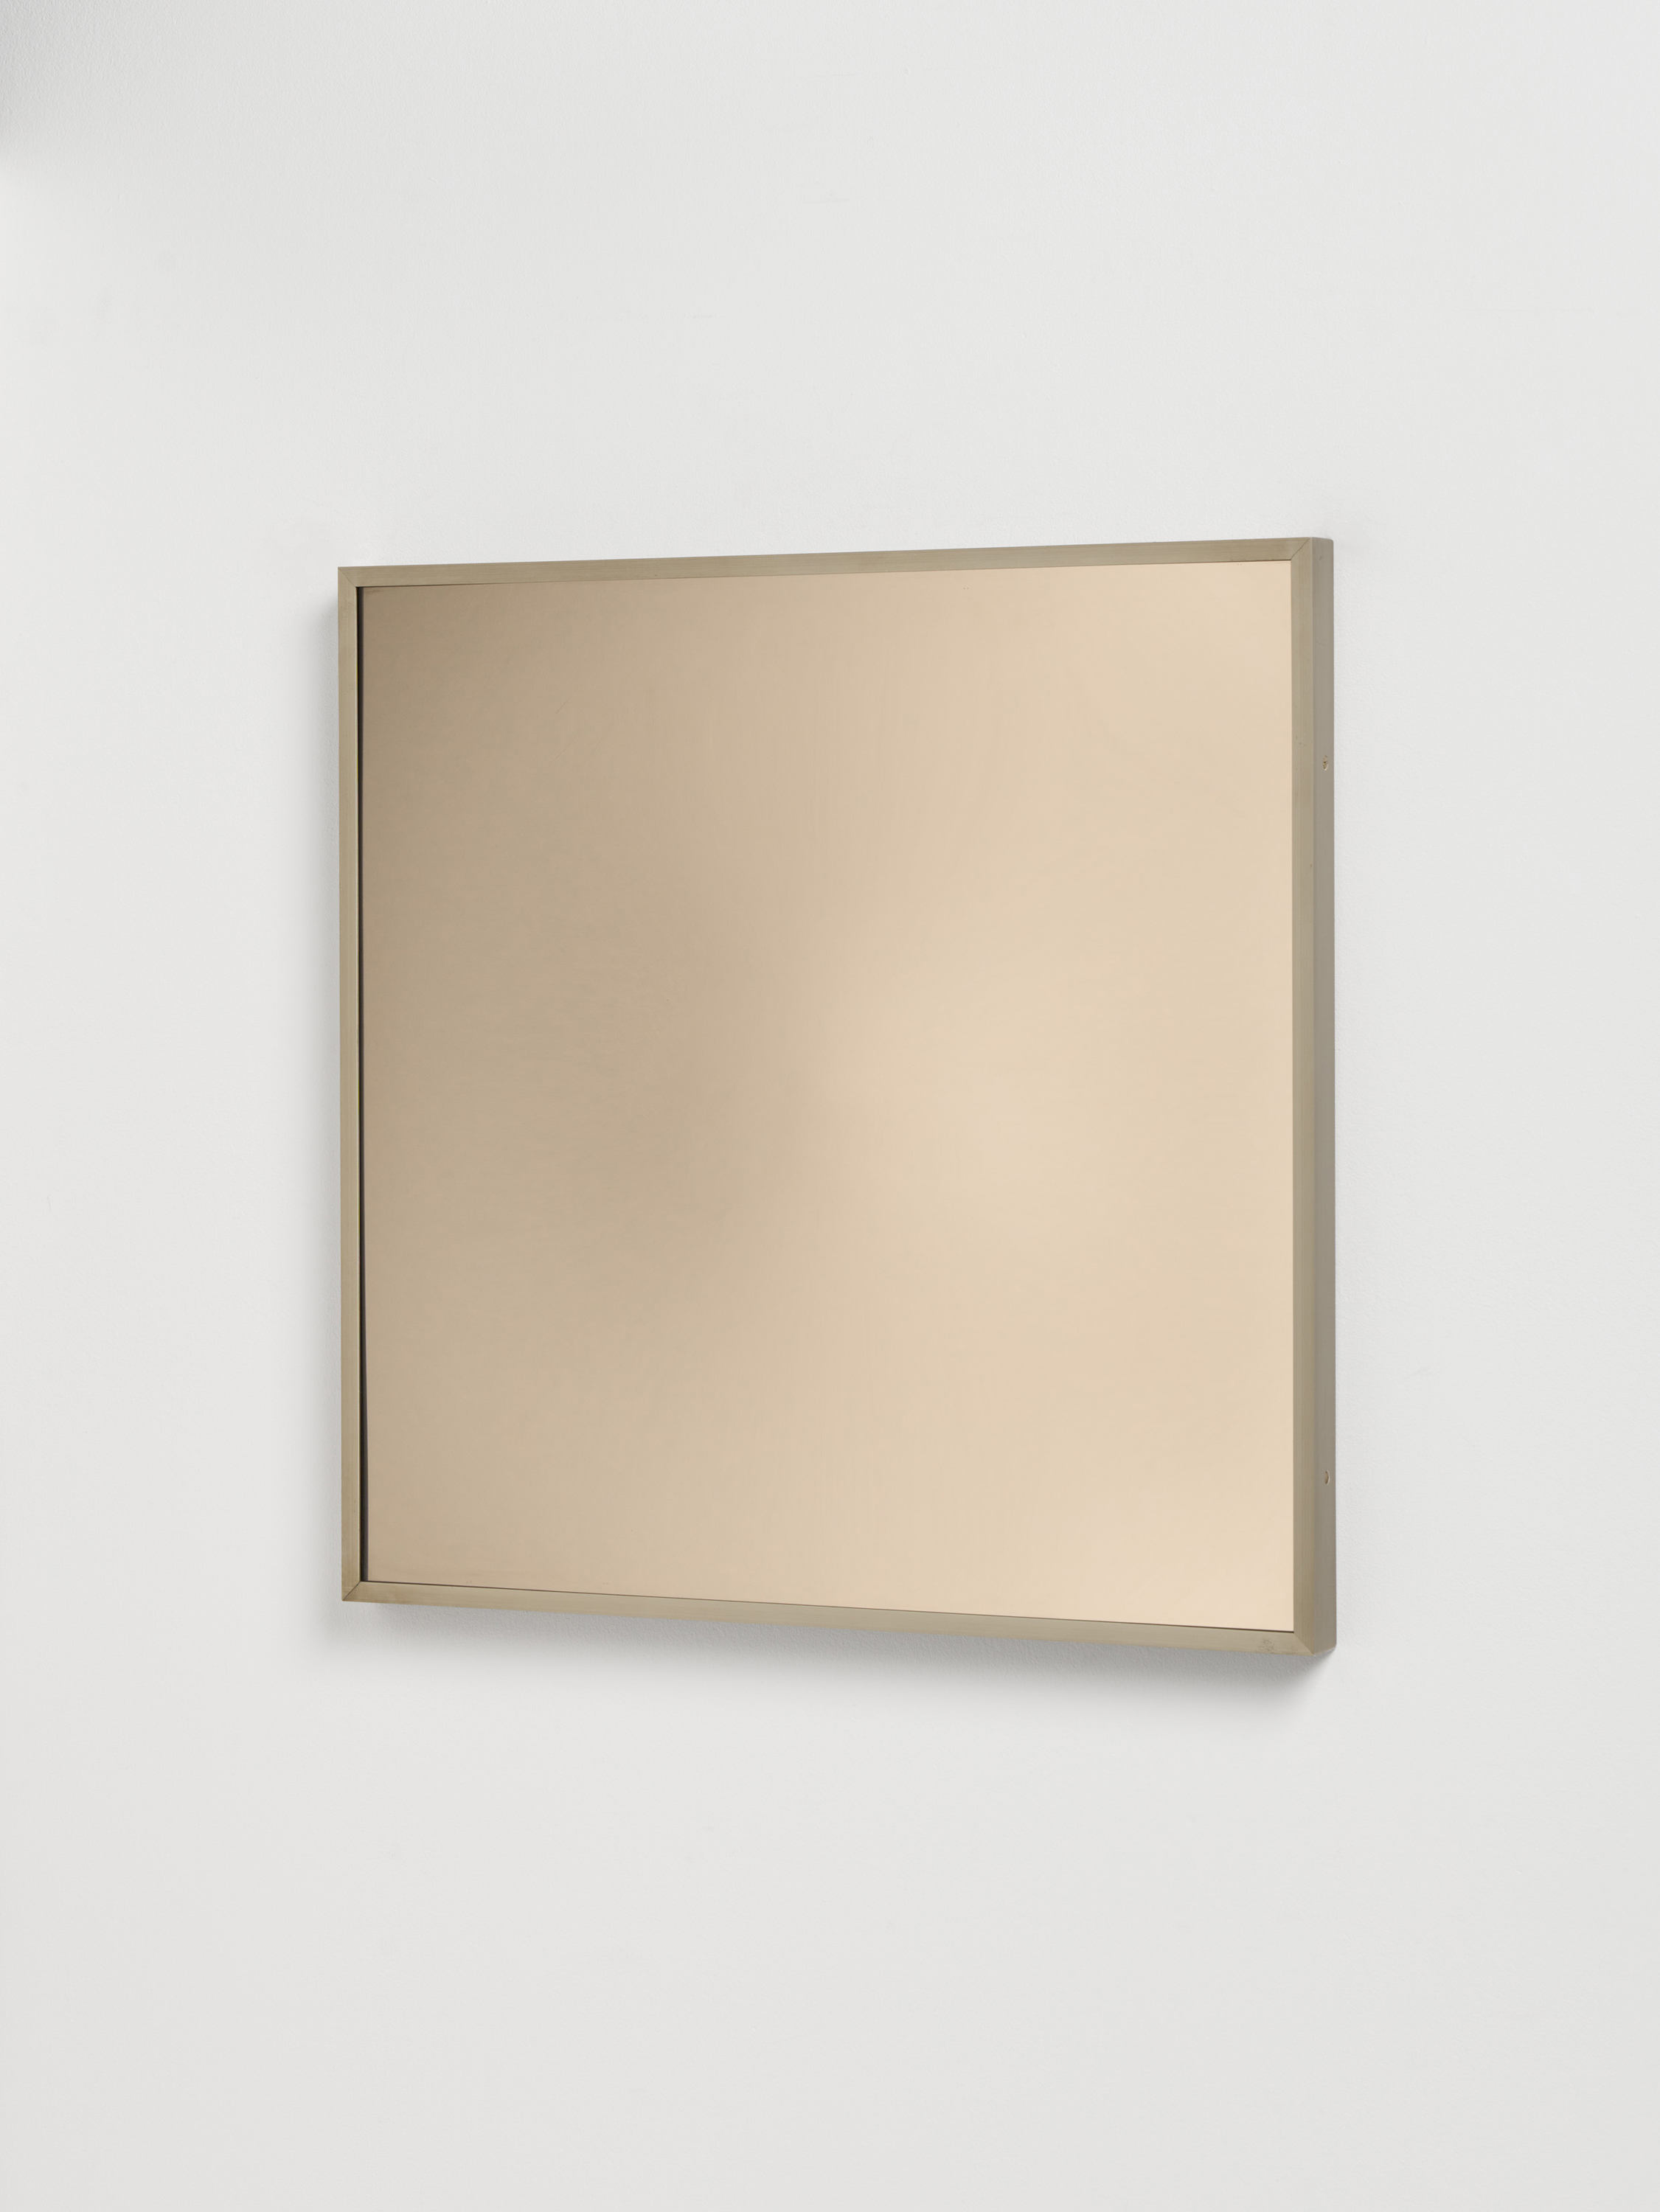 Victor Bonato - glas-spiegel-verformung 0-II-KX80, 76841-2, Van Ham Kunstauktionen